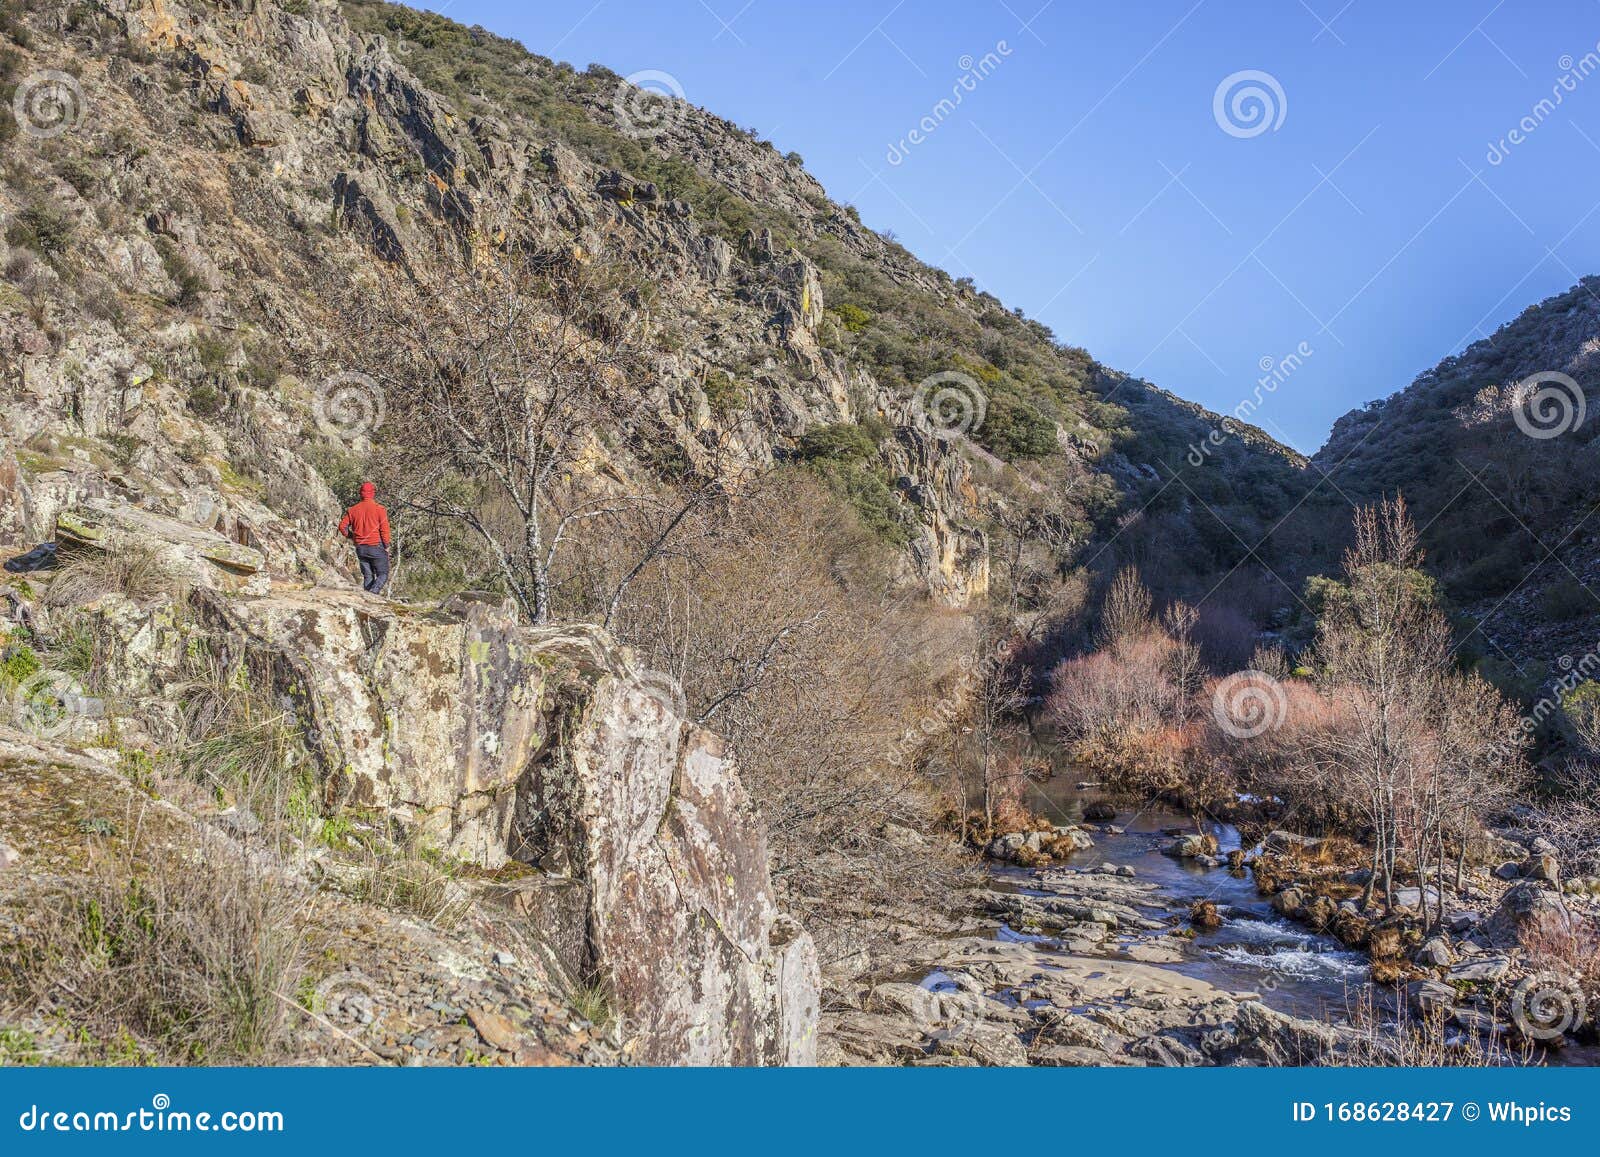 hiker walking by estena riverside, national park of cabaneros